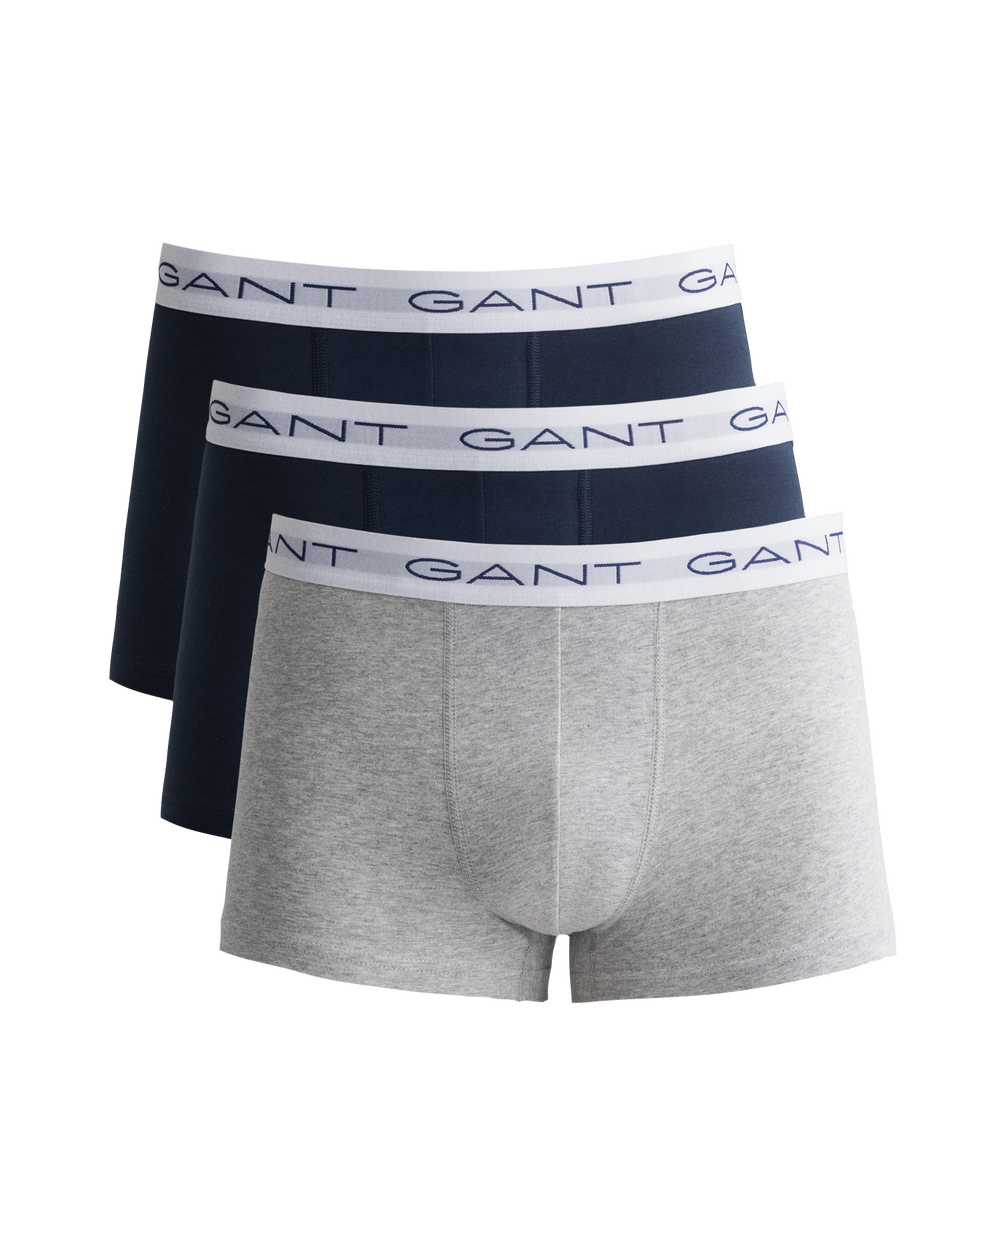 Gant Trunk Men’s 3 Pack